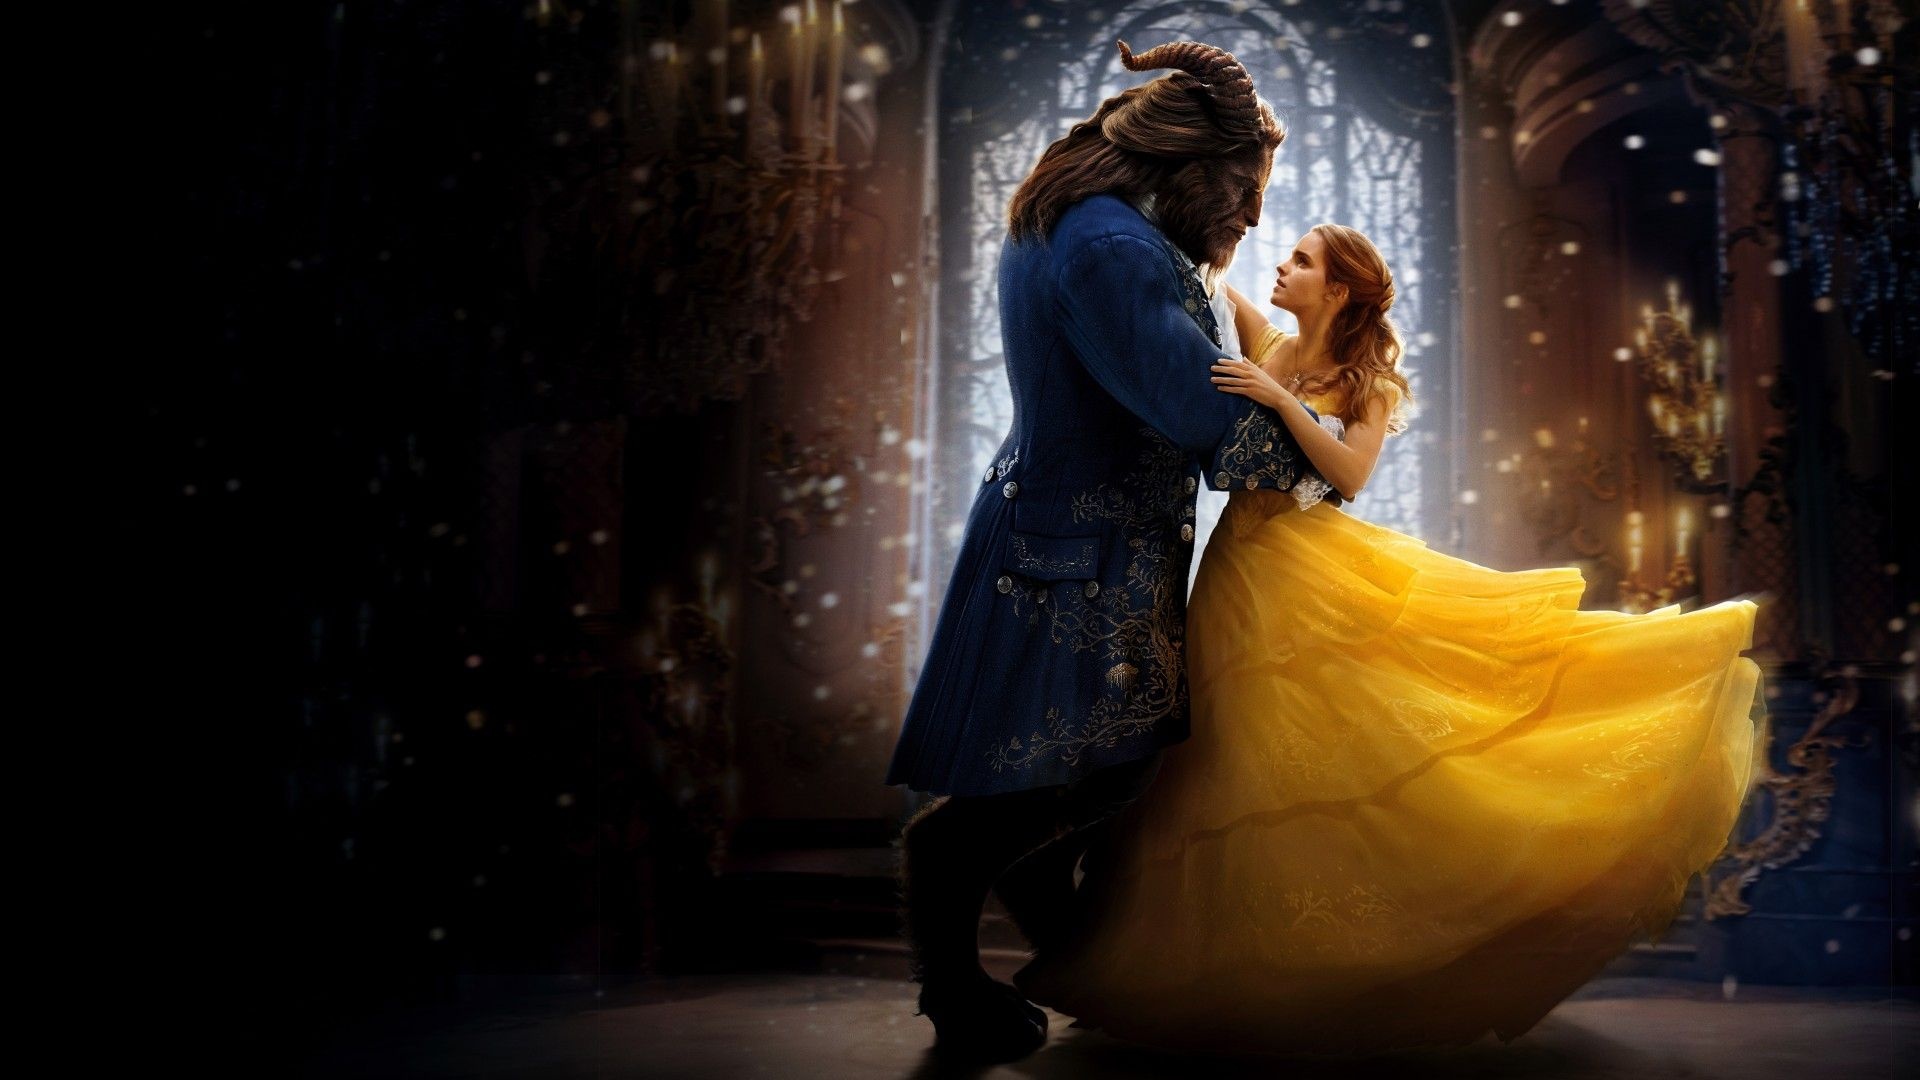 Emma Watson as Belle, Enchanted castle, Timeless love, Mysterious prince, 1920x1080 Full HD Desktop